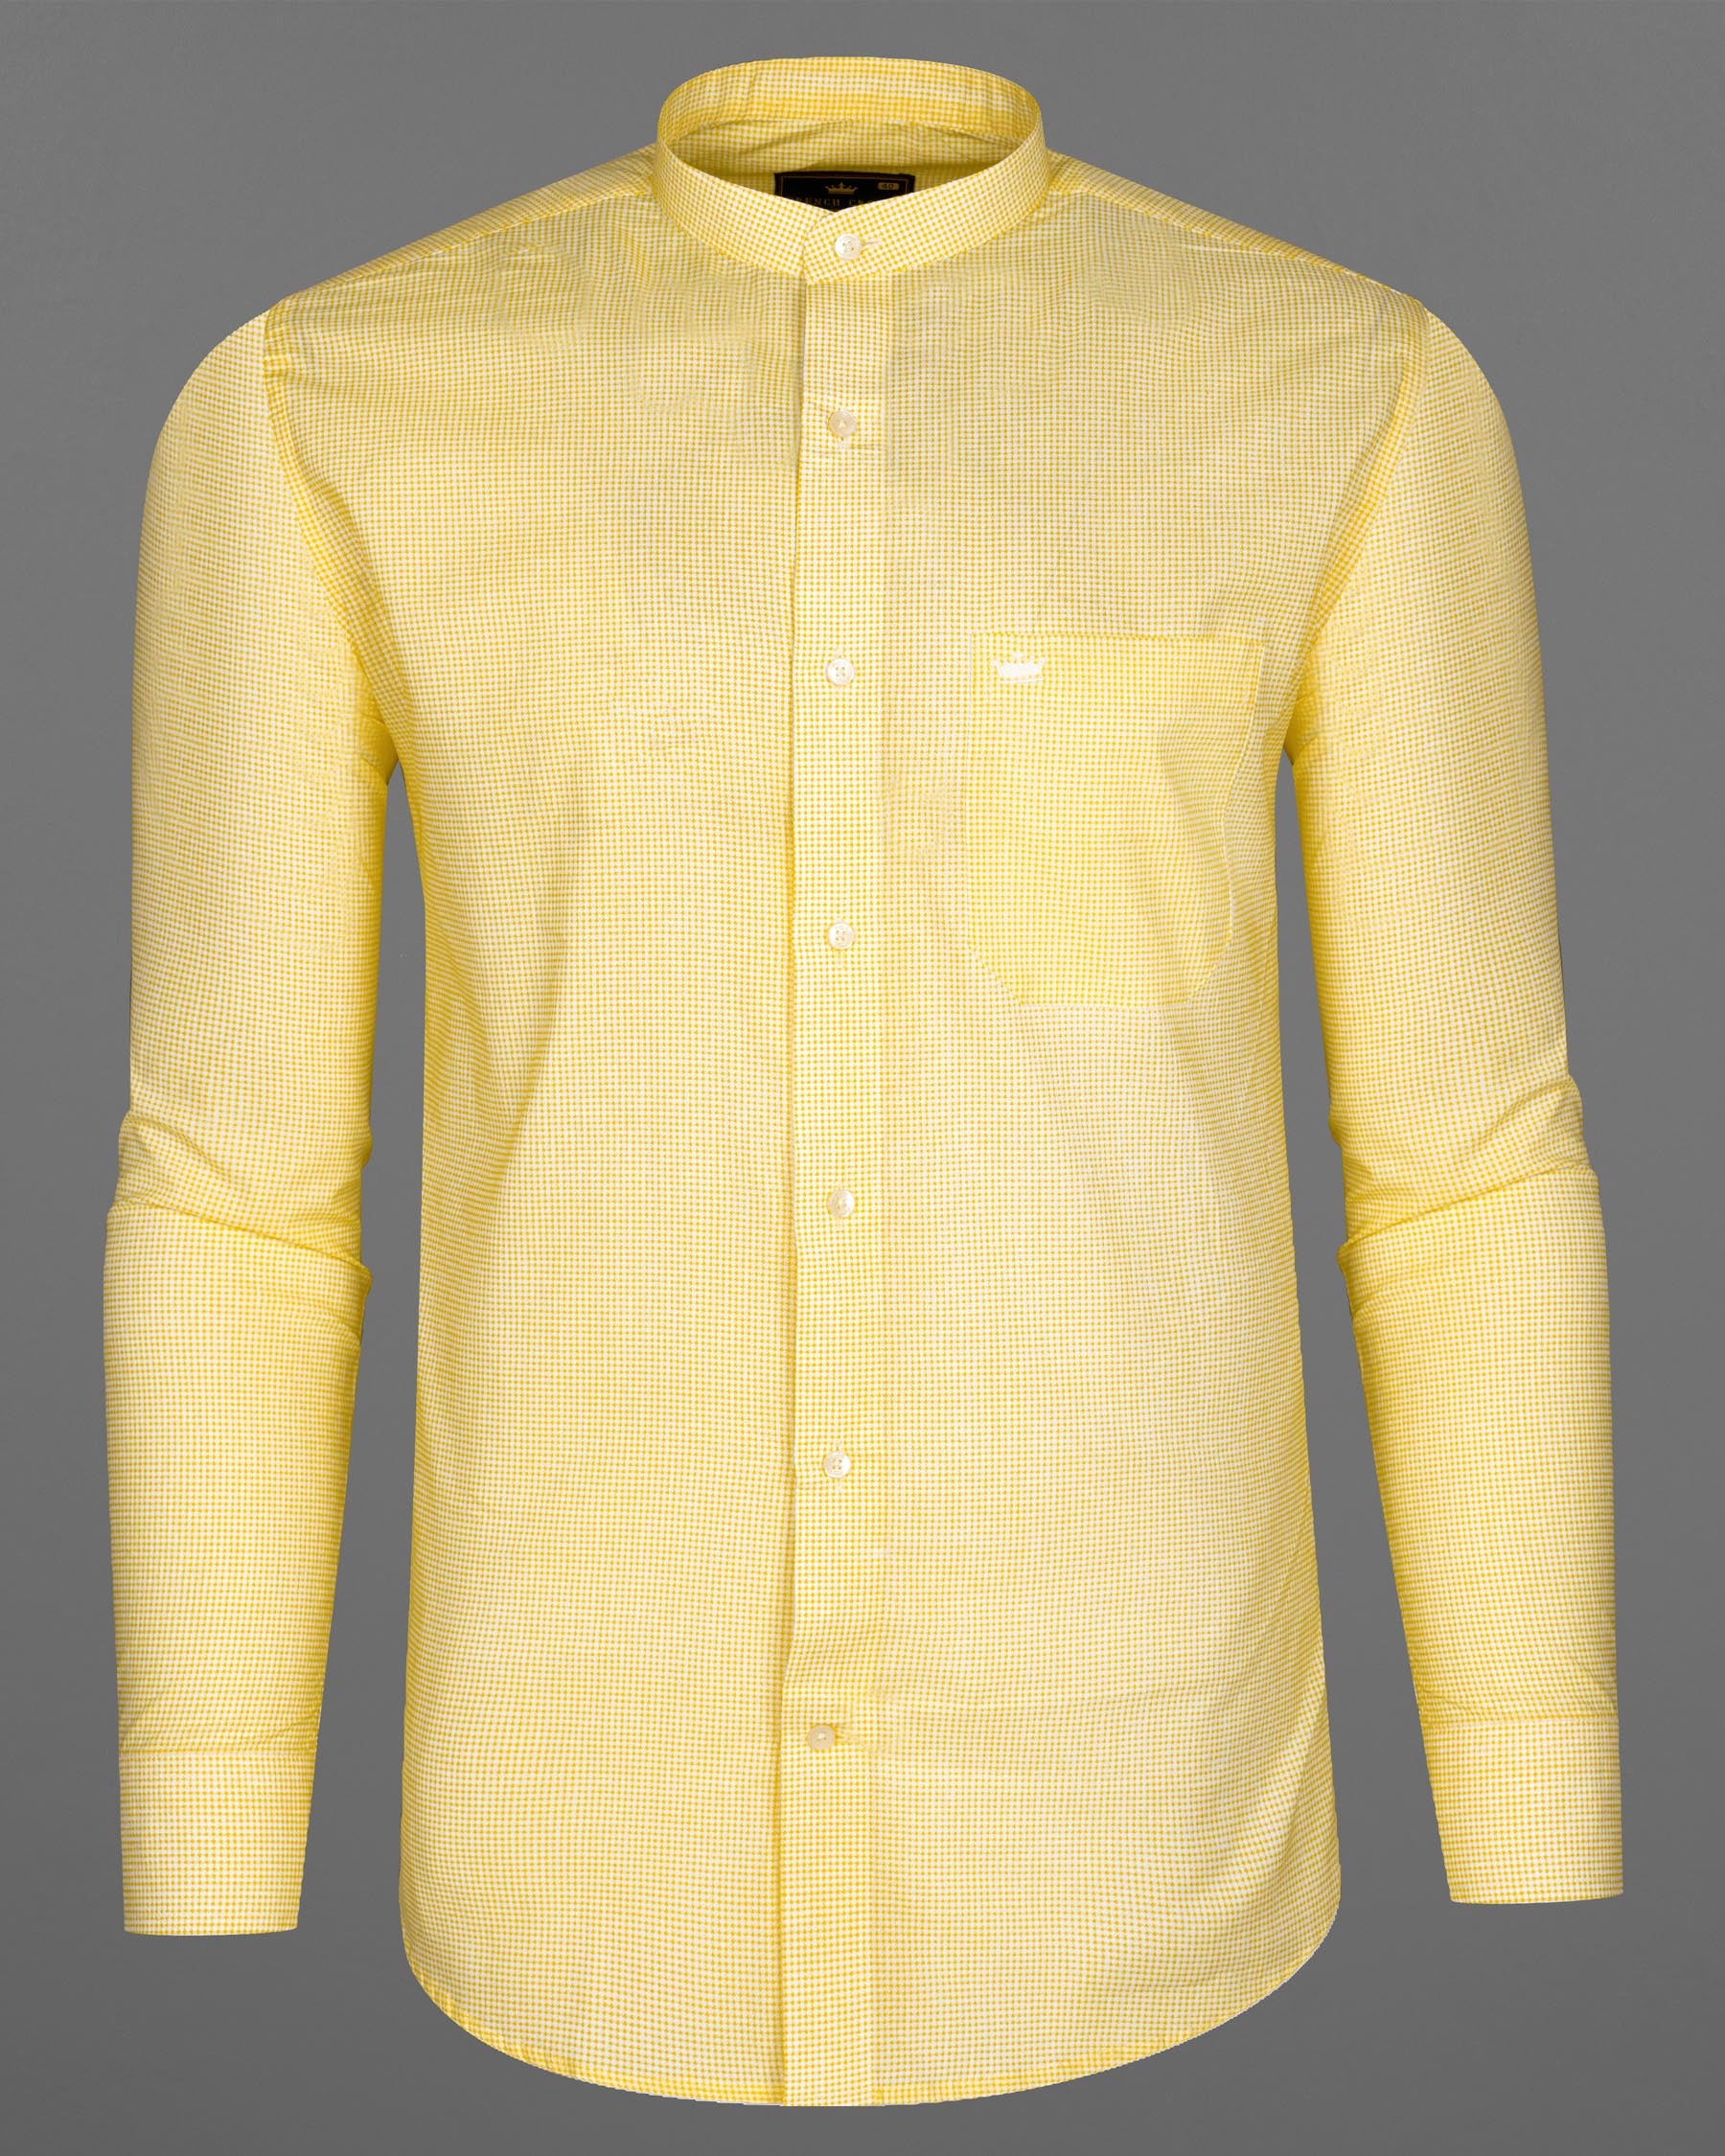 Dandelion Yellow and Bright White Mini Checkered Premium Cotton Shirt 7980-M-38, 7980-M-H-38, 7980-M-39, 7980-M-H-39, 7980-M-40, 7980-M-H-40, 7980-M-42, 7980-M-H-42, 7980-M-44, 7980-M-H-44, 7980-M-46, 7980-M-H-46, 7980-M-48, 7980-M-H-48, 7980-M-50, 7980-M-H-50, 7980-M-52, 7980-M-H-52